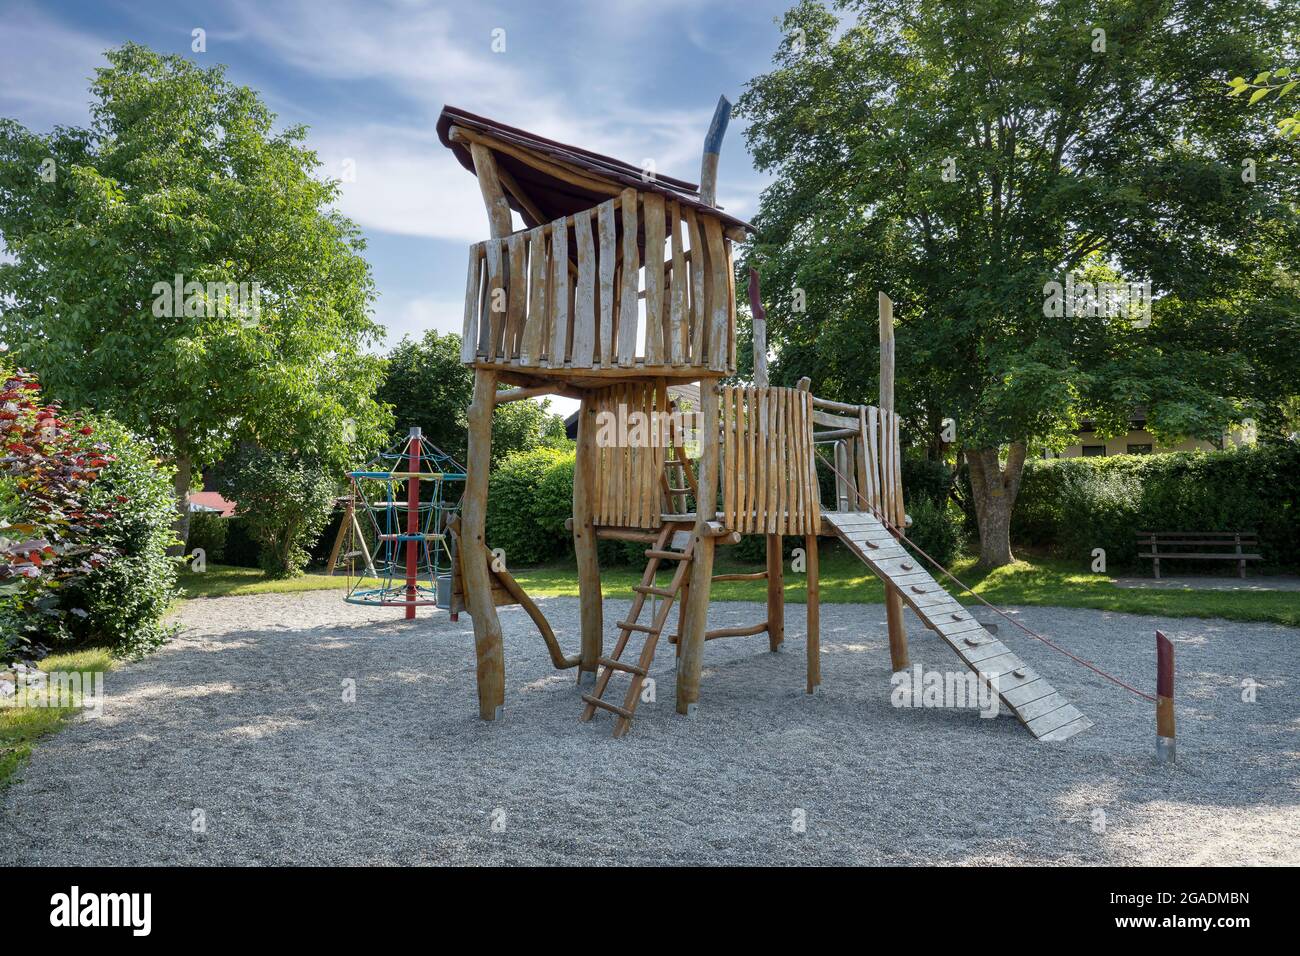 Spielhaus aus Holz auf einem Kinderspielplatz in einem kleinen Park Stockfoto